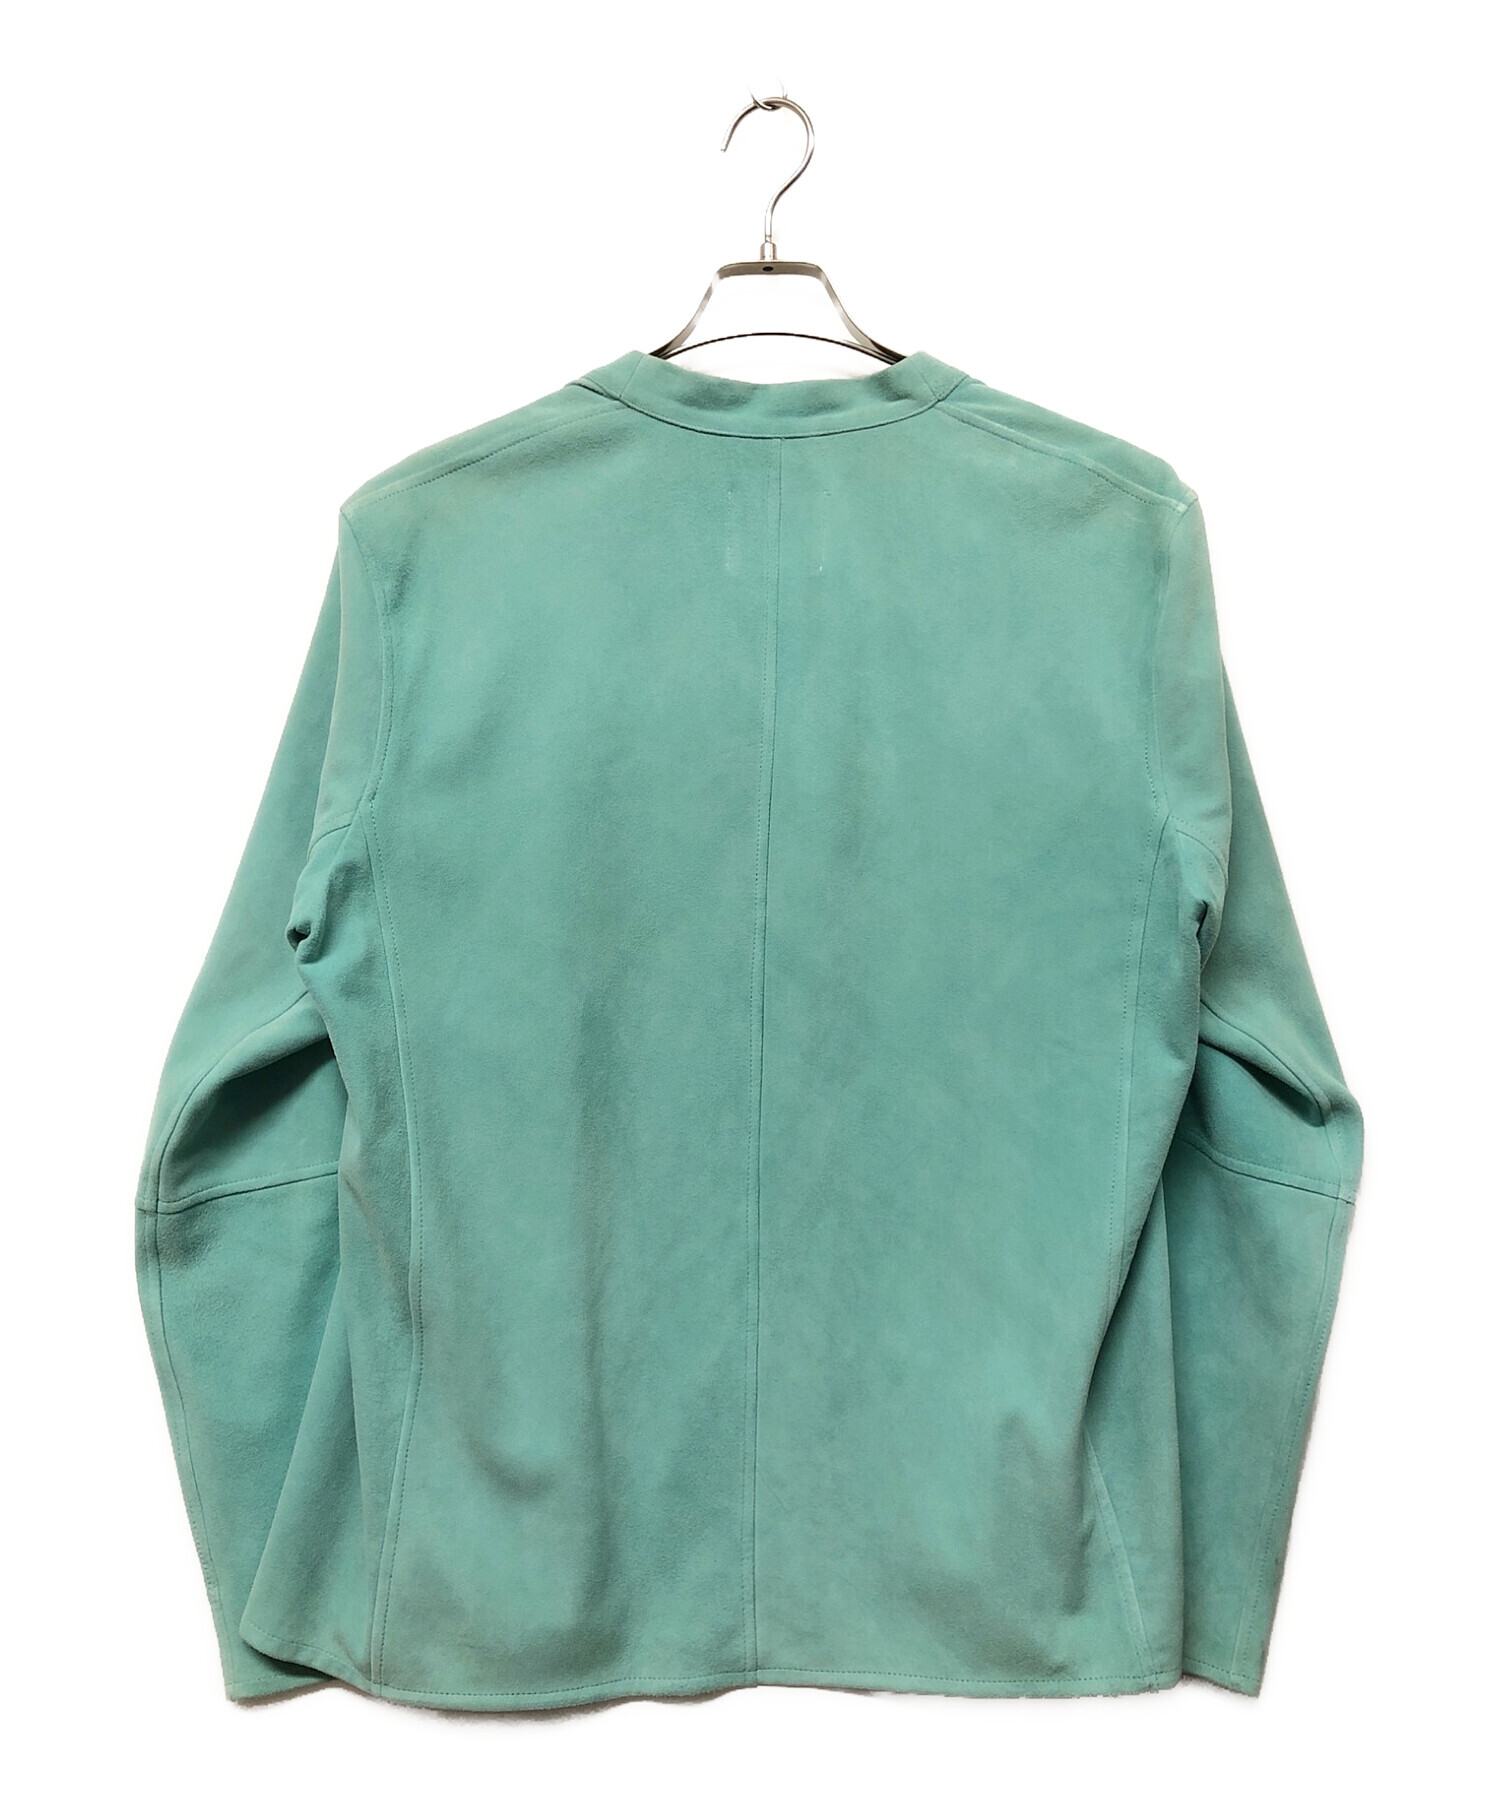 EMMETI (エンメティ) ゴートスキンスウェードジャケット 黄緑 サイズ:48